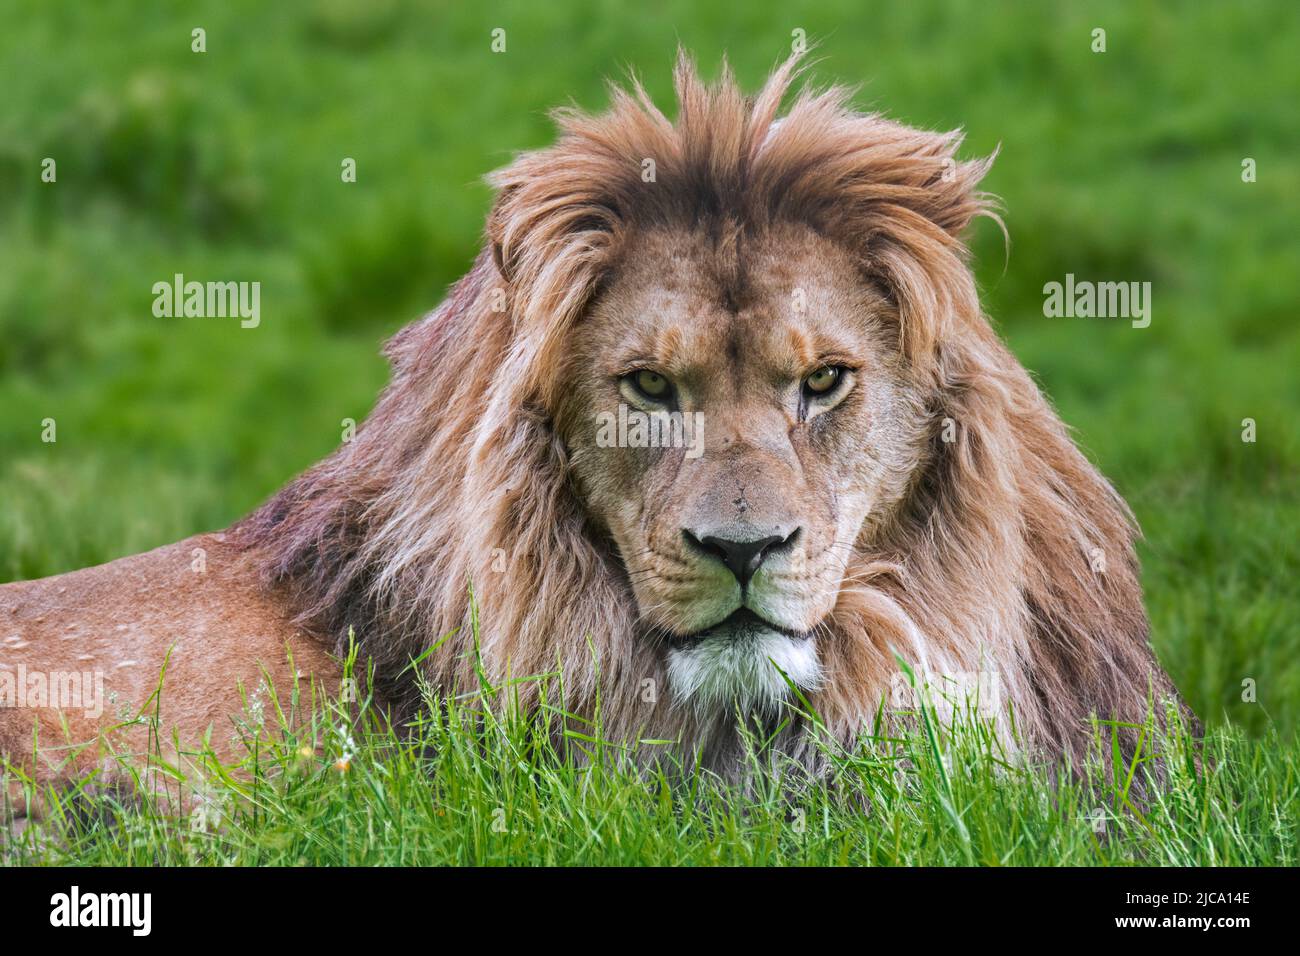 Lion de Barbarie / lion d'Afrique du Nord / lion de berbère / lion d'Atlas / lion d'Égypte (Panthera leo) Fierce look masculin, éteint dans la nature Banque D'Images